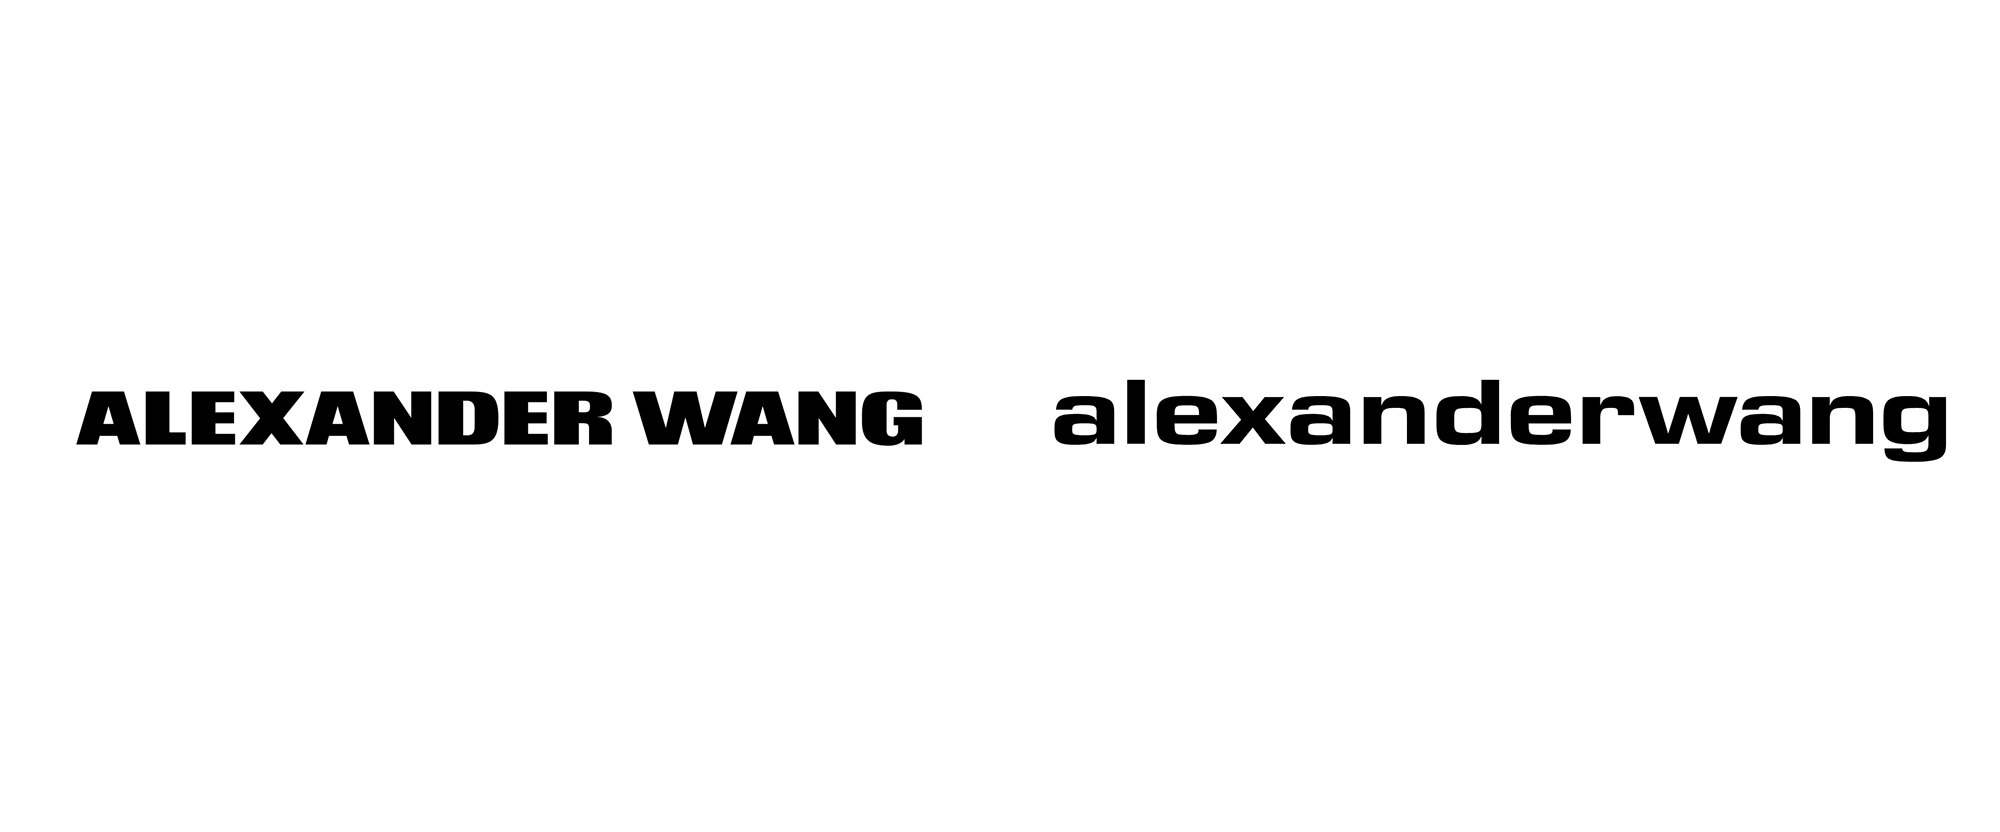 Alexander Wang Logo - Brand New: New Logo for Alexander Wang